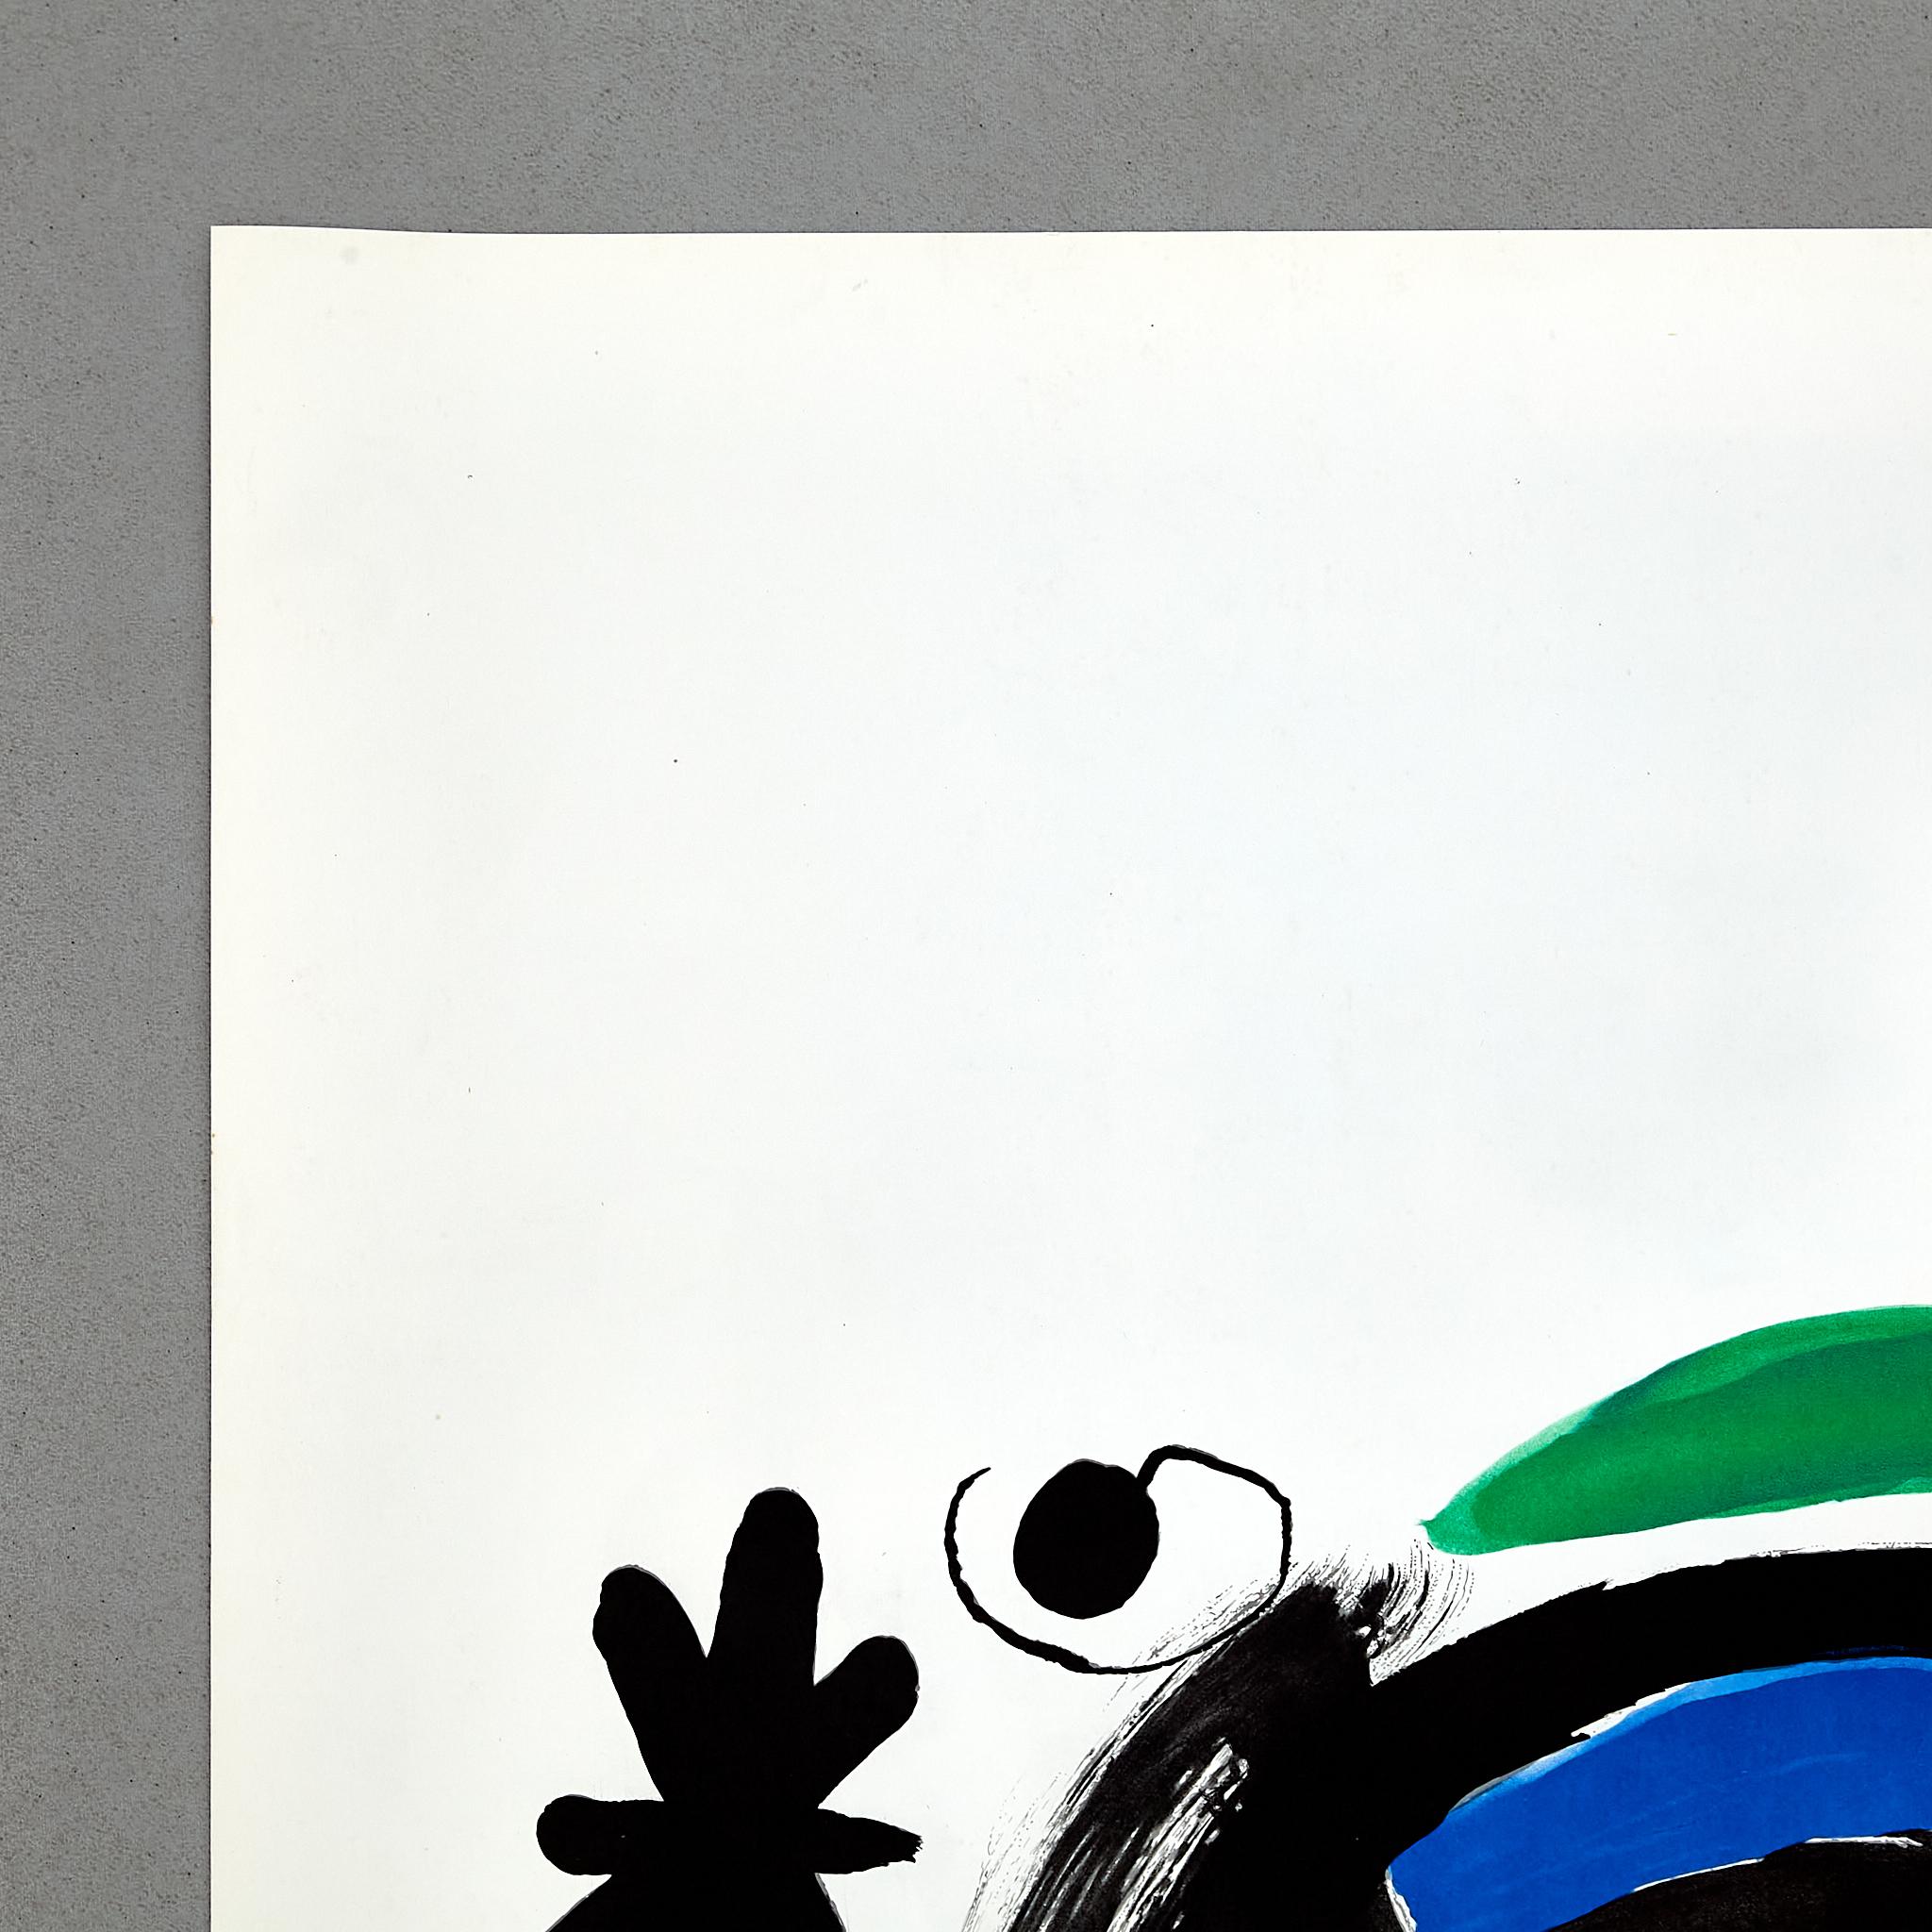  Hochwertige Farblithografie von Joan Miró, um 1960. (Spanisch)